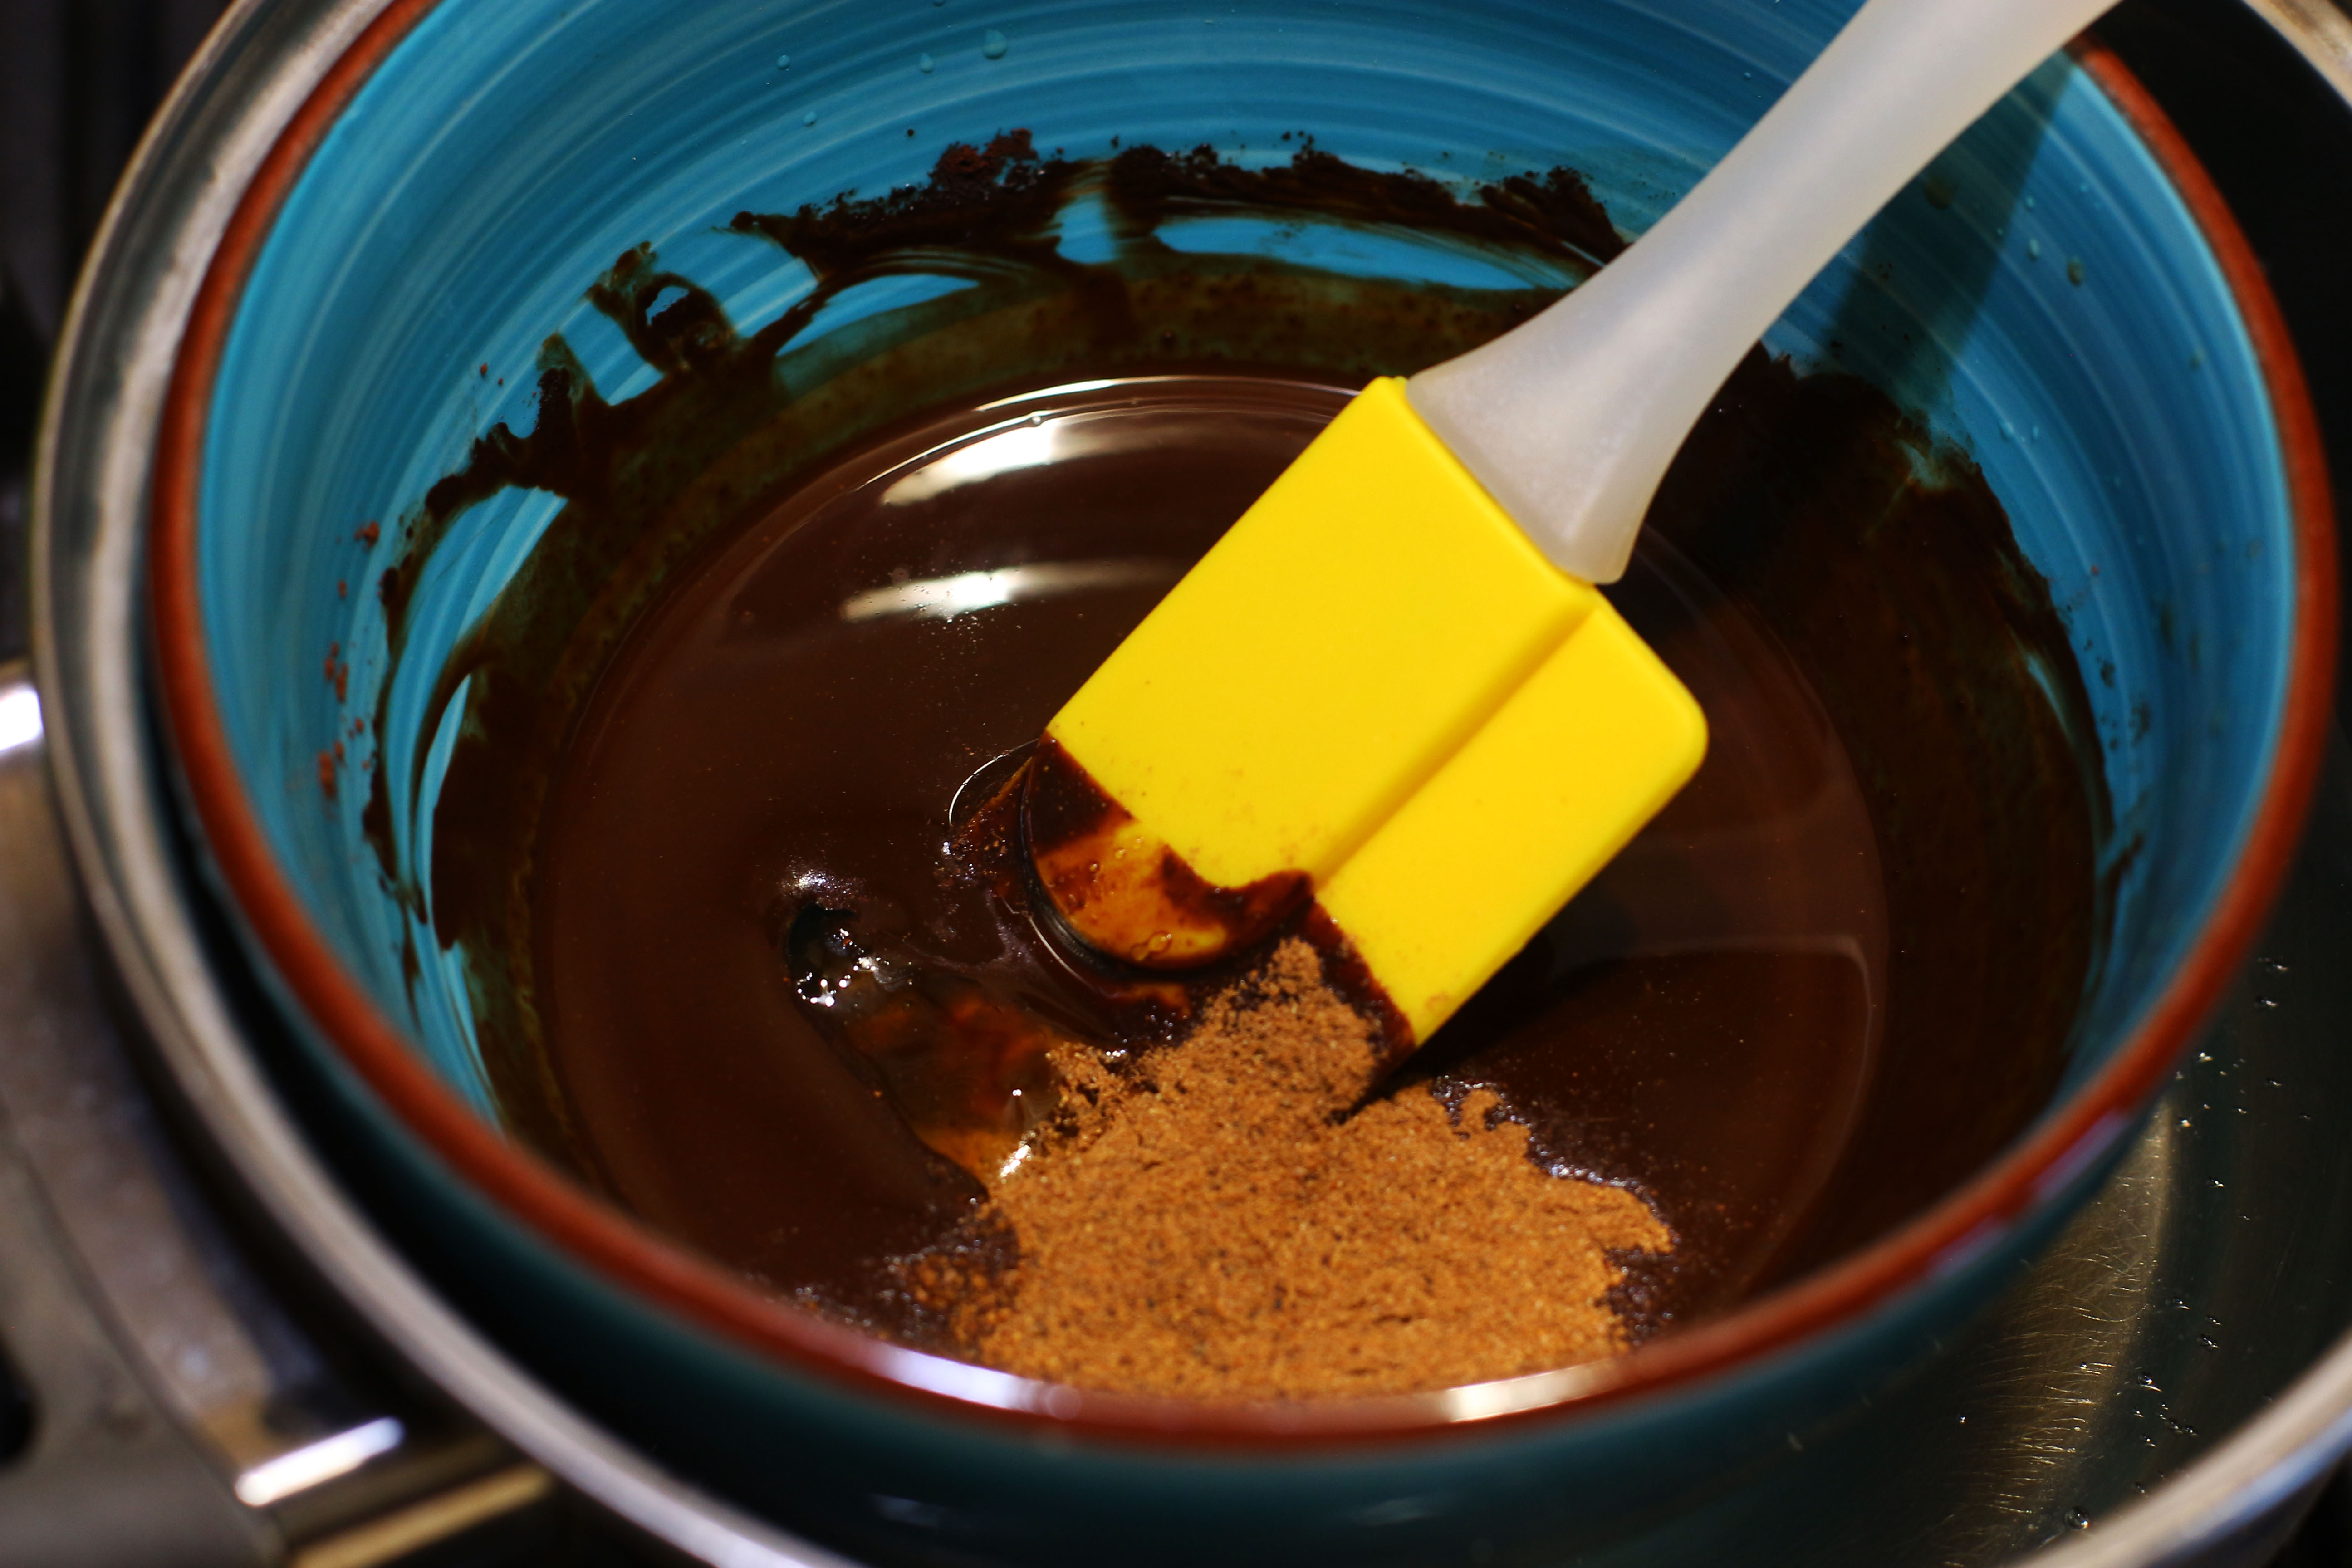 Рецепт домашнего шоколада с маслом. Как можно сделать из какао шоколад. Дояработы с какао маслом насос. Kakaove maslo Cacao Butter fb. Чем разбавить шоколад в домашних условиях.